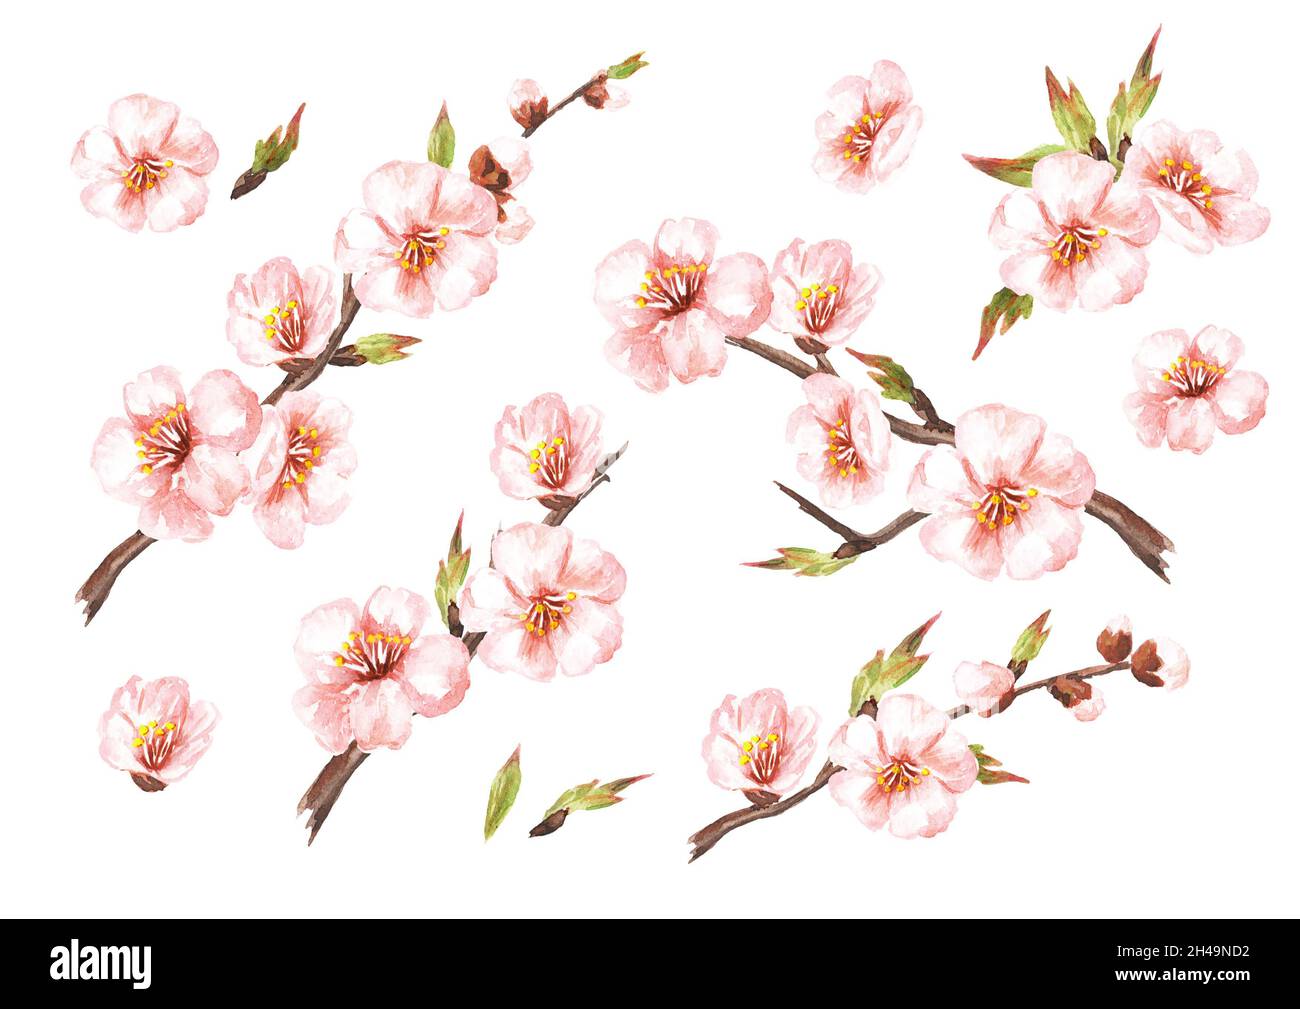 Ensemble de branches de sakura à fleurs printanières.Aquarelle illustration dessinée à la main isolée sur fond blanc Banque D'Images